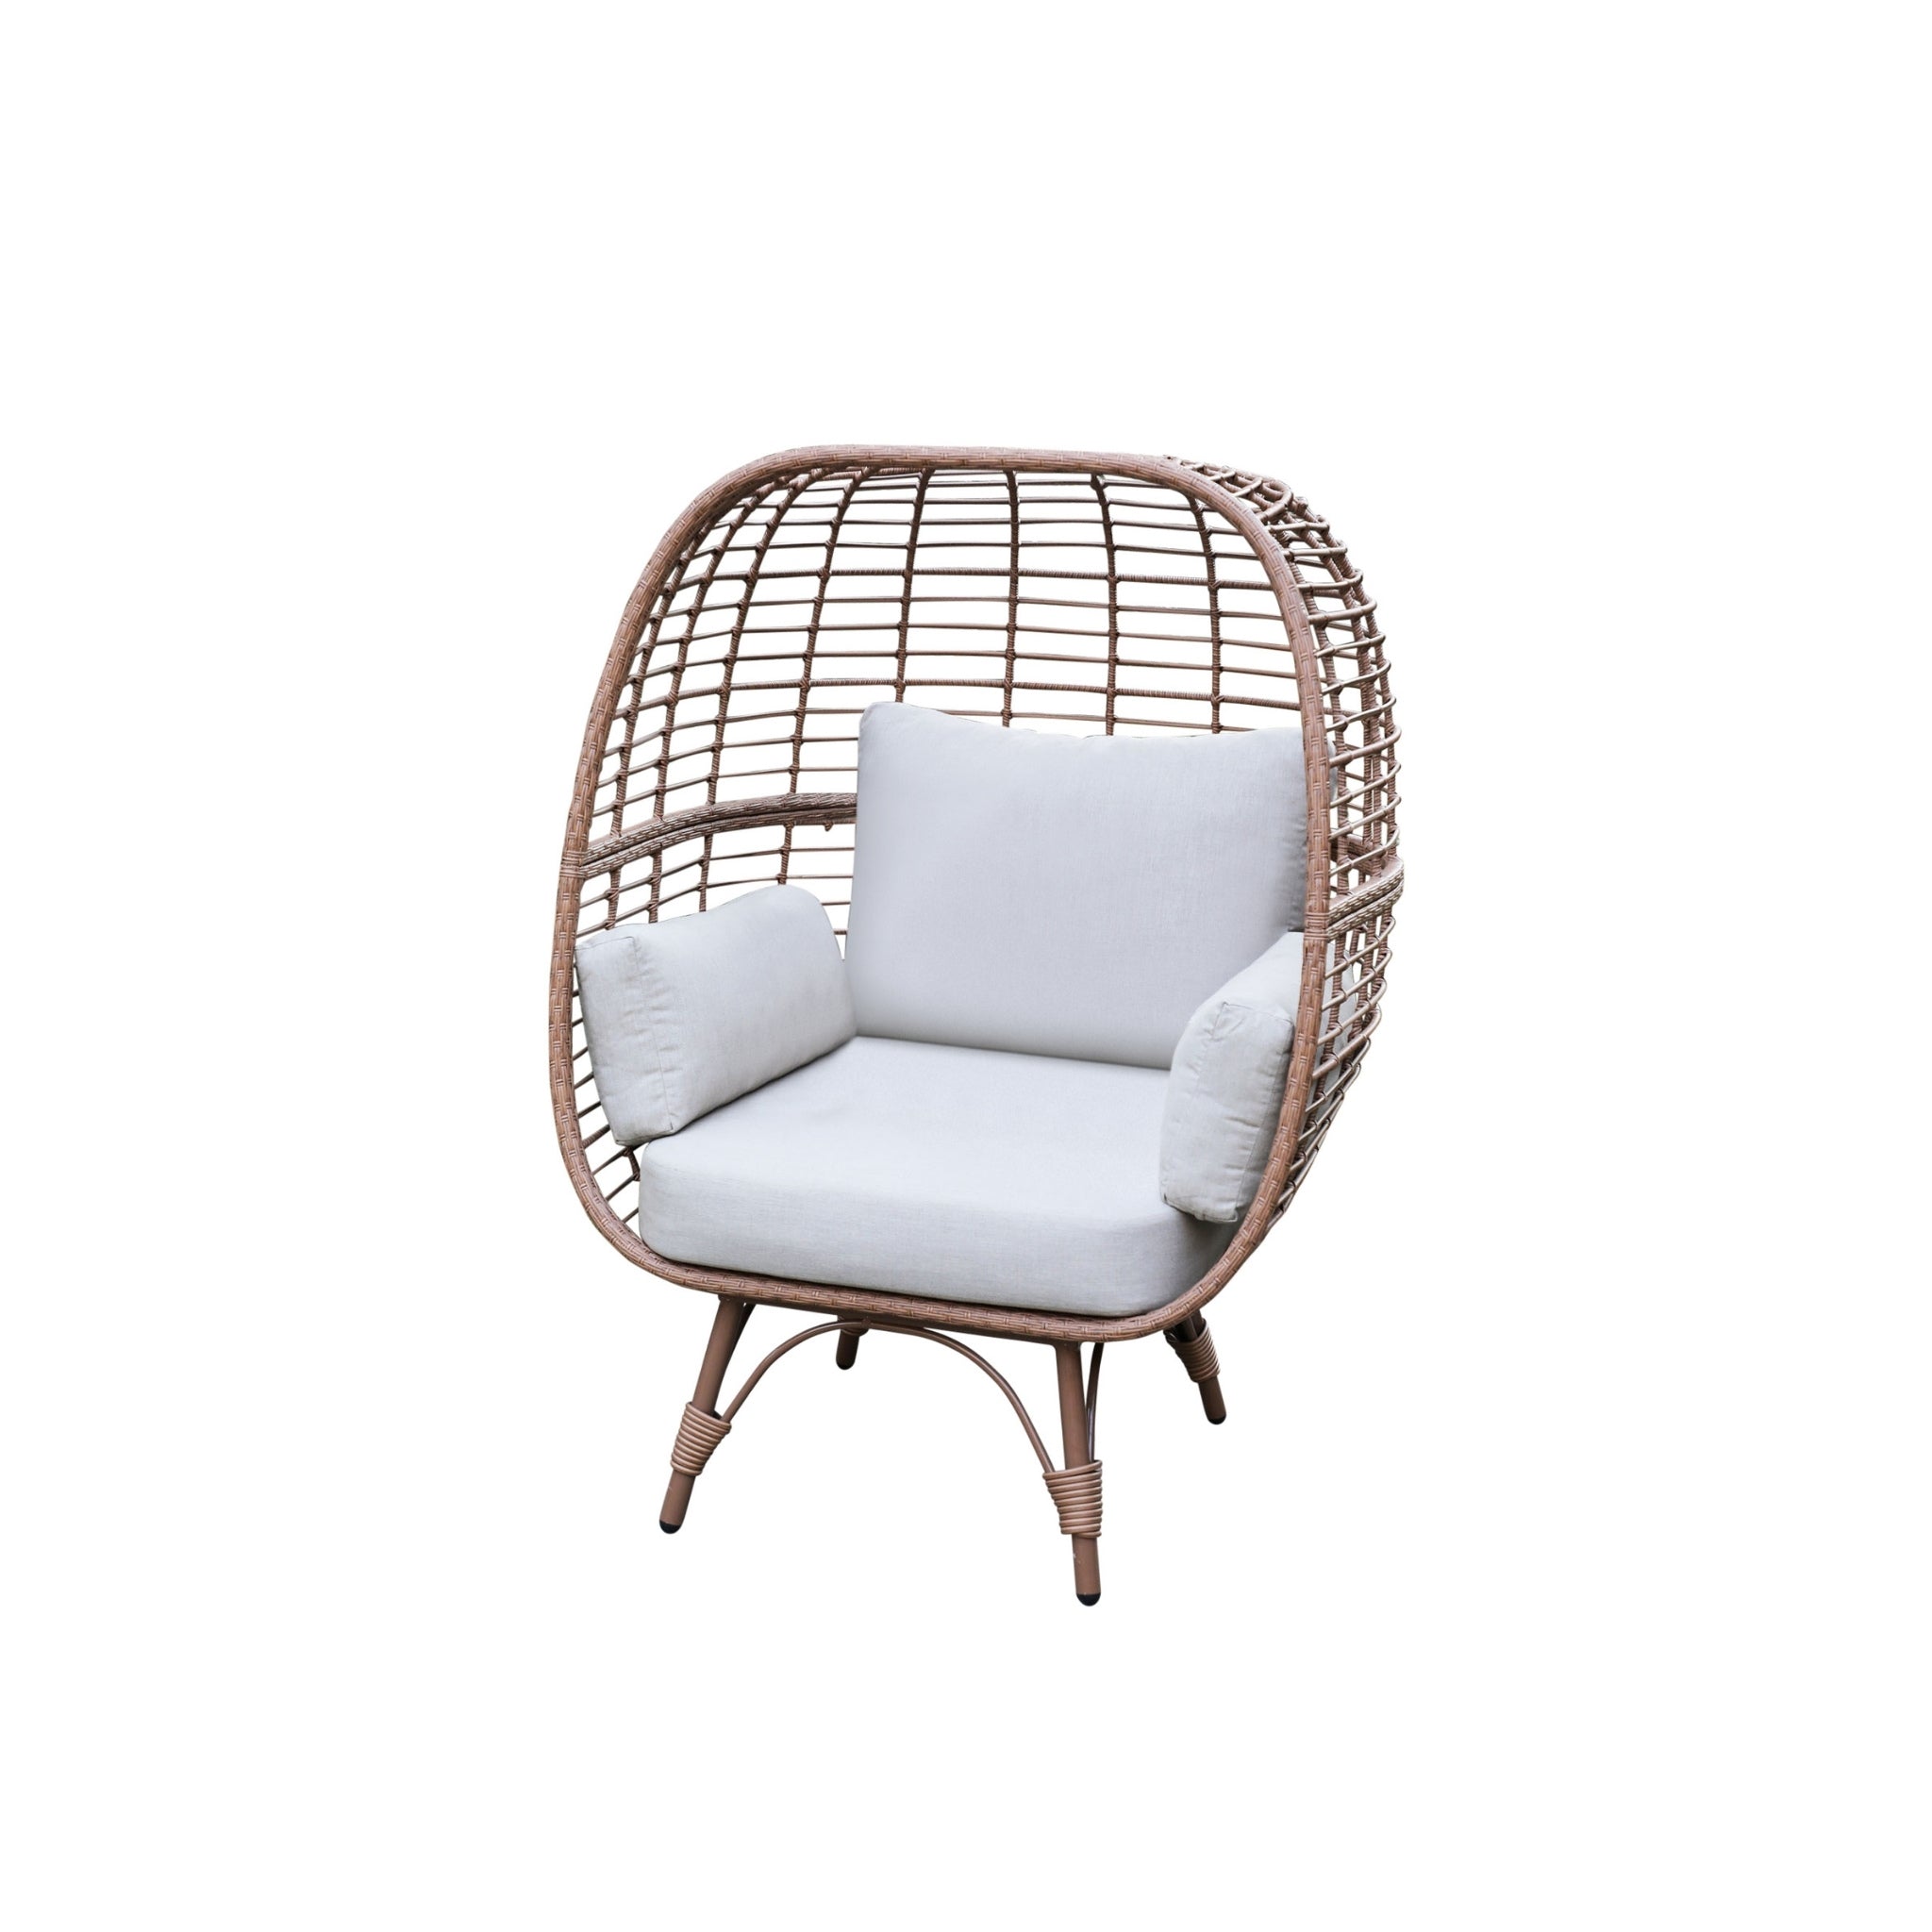 Bourton Single Outdoor Egg Chair